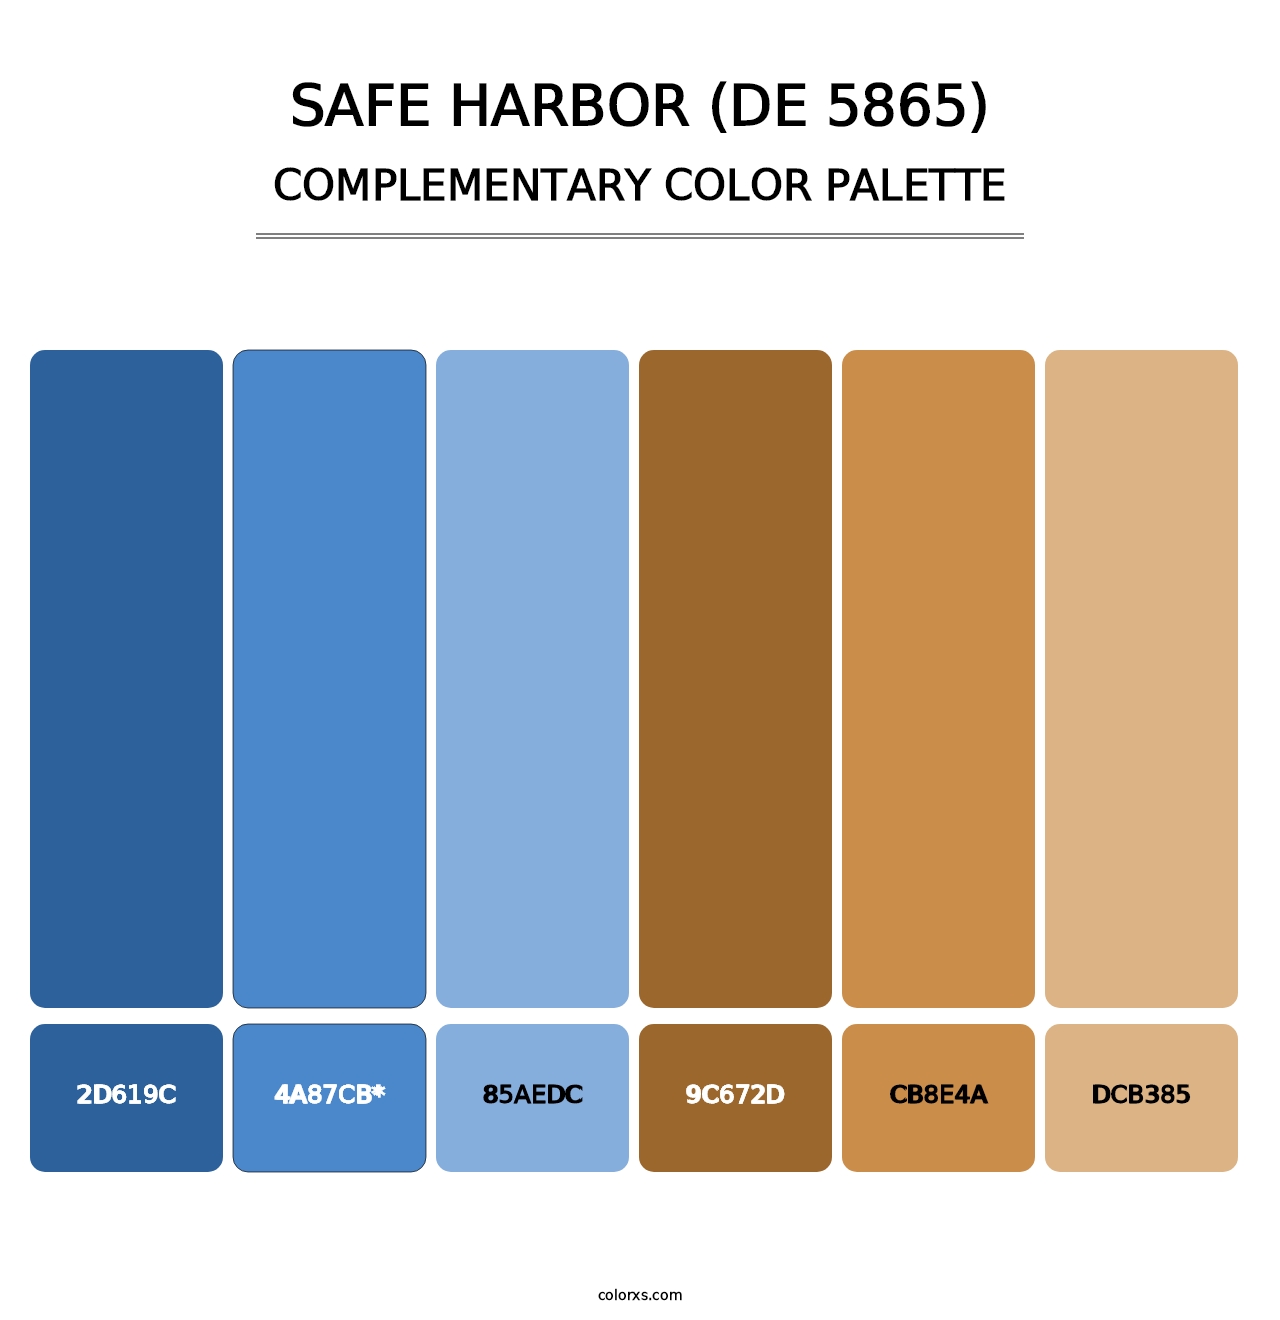 Safe Harbor (DE 5865) - Complementary Color Palette